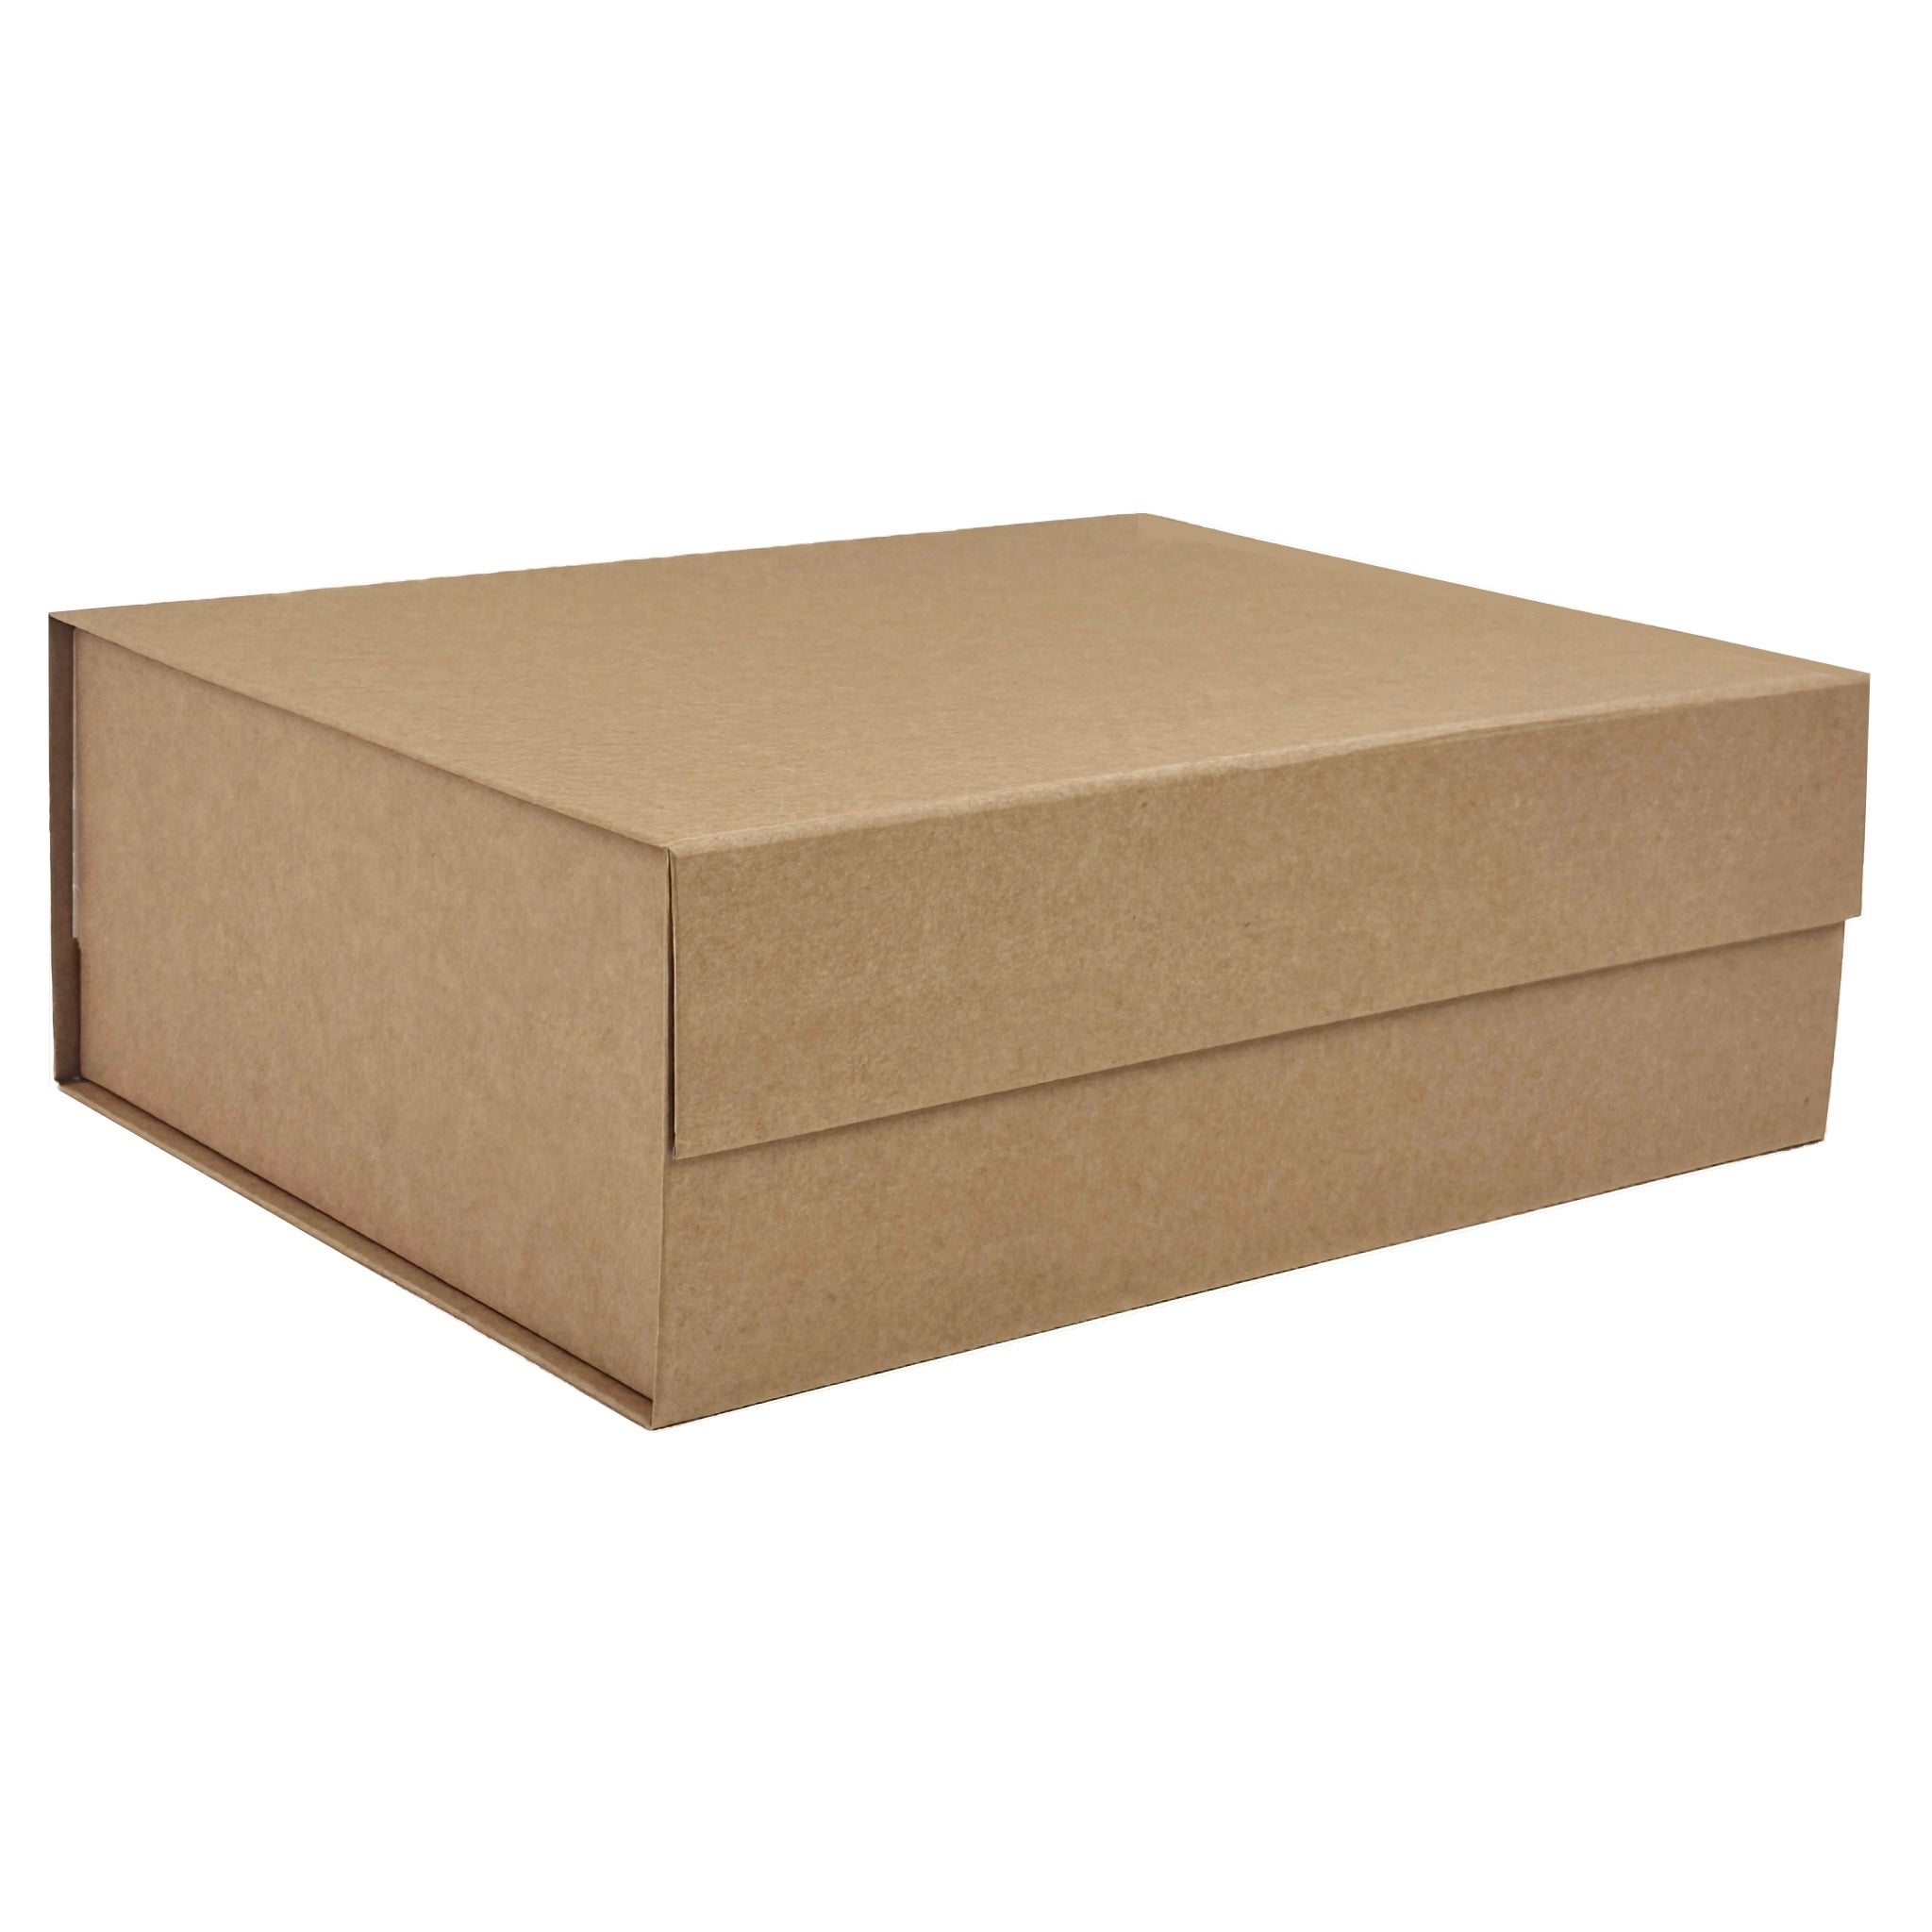 Soap Box - No Window (KRAFT COLOR) - Wholesale Supplies Plus